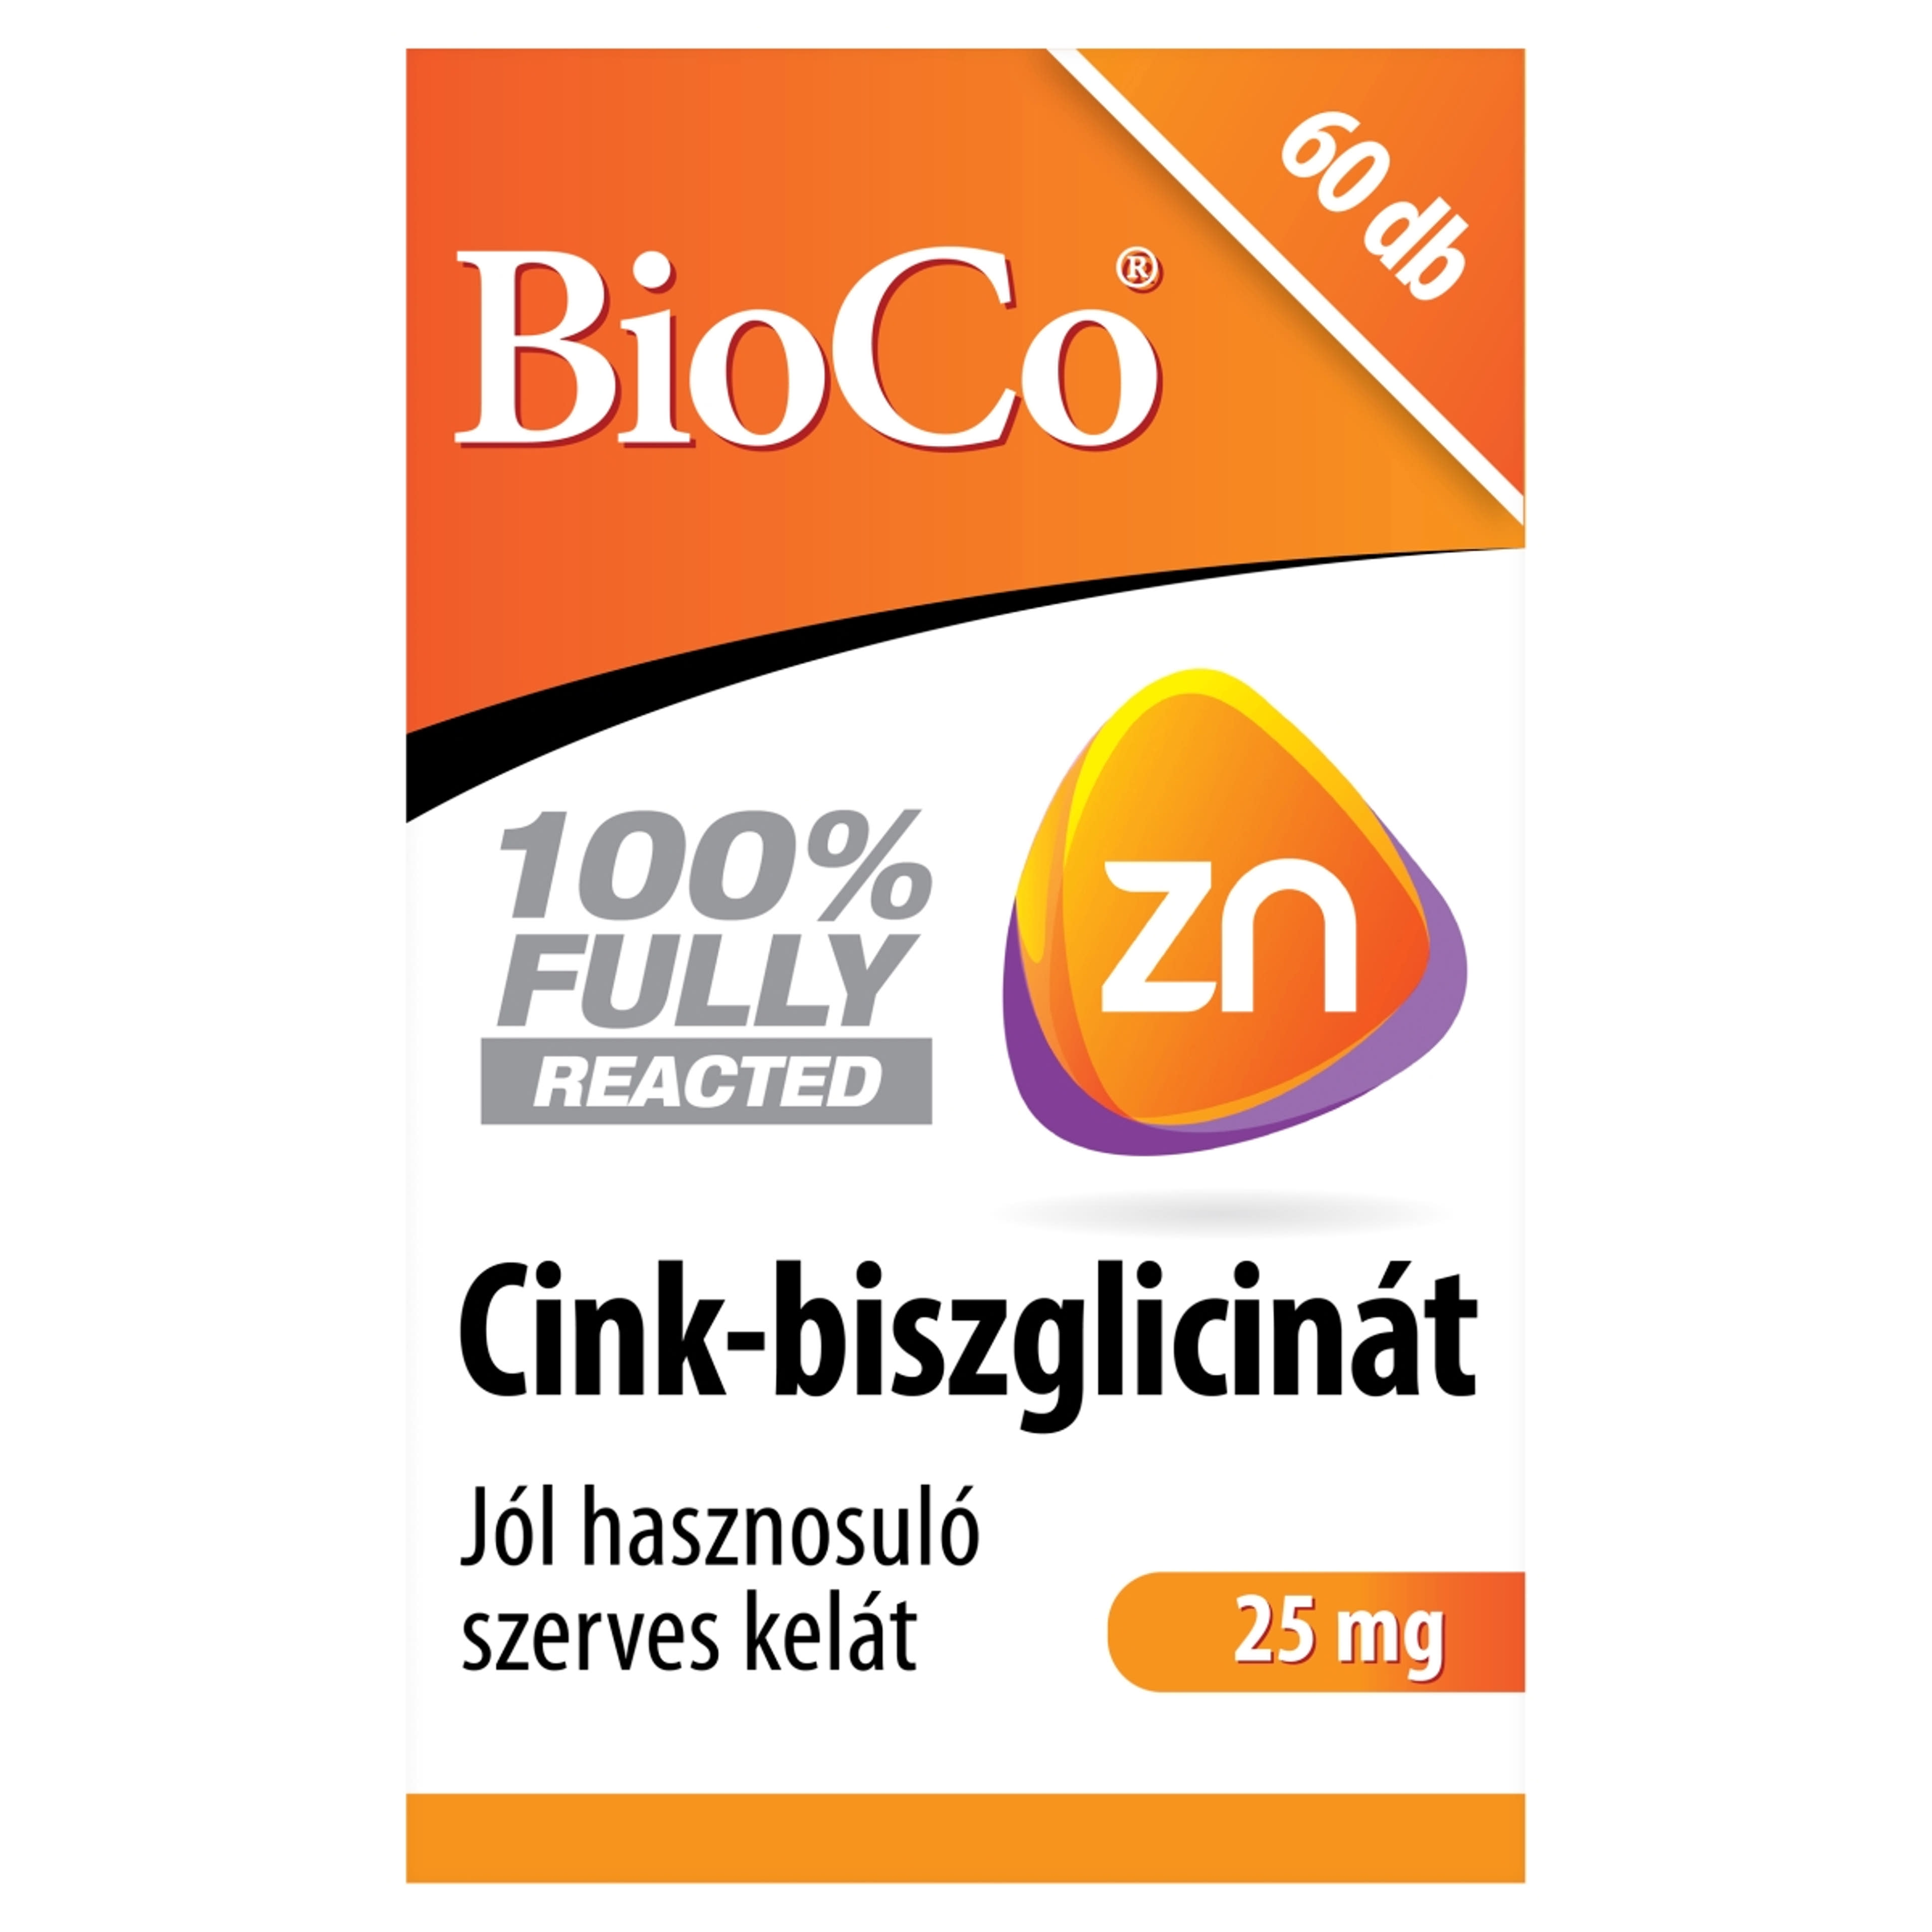 BioCo Cink-biszglicinát étrend-kiegészítő tabletta - 60 db